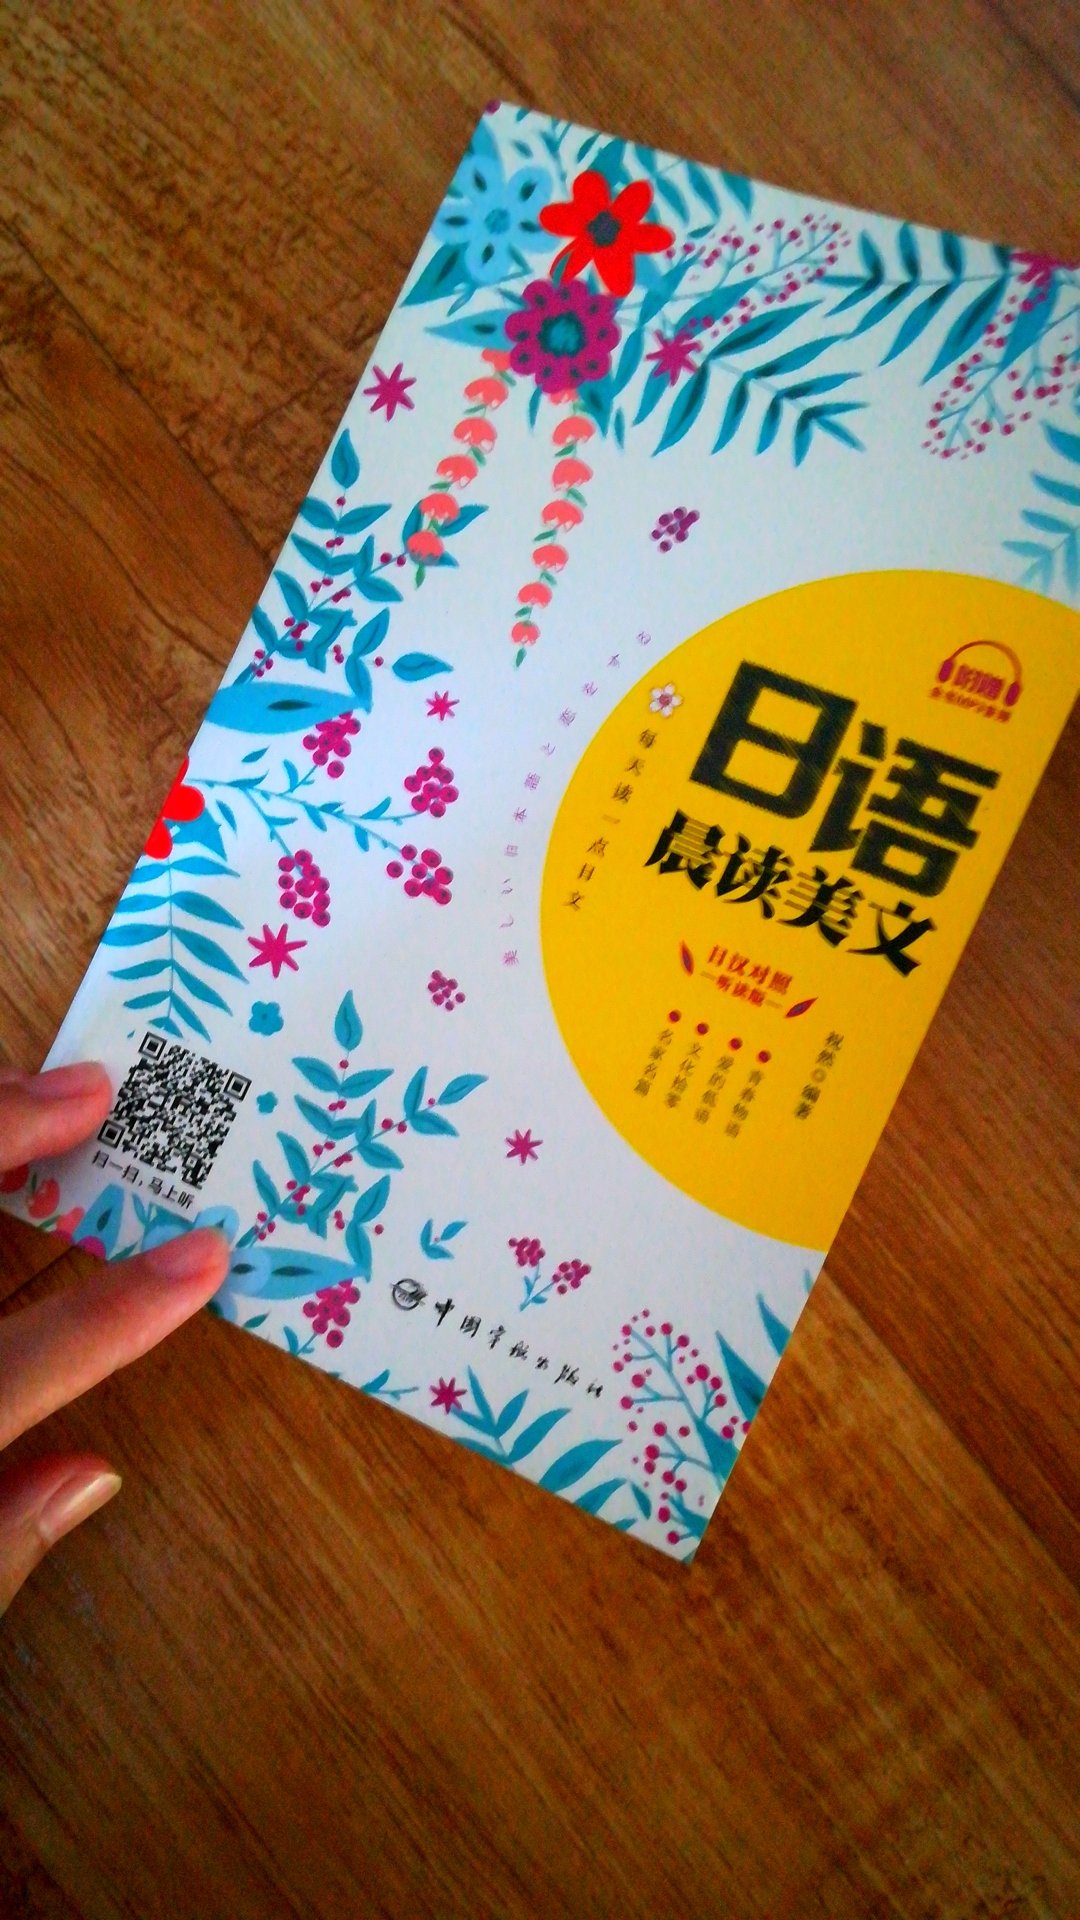 书比我想象的要厚，印刷精美。可以重新拾回我的日语啦?